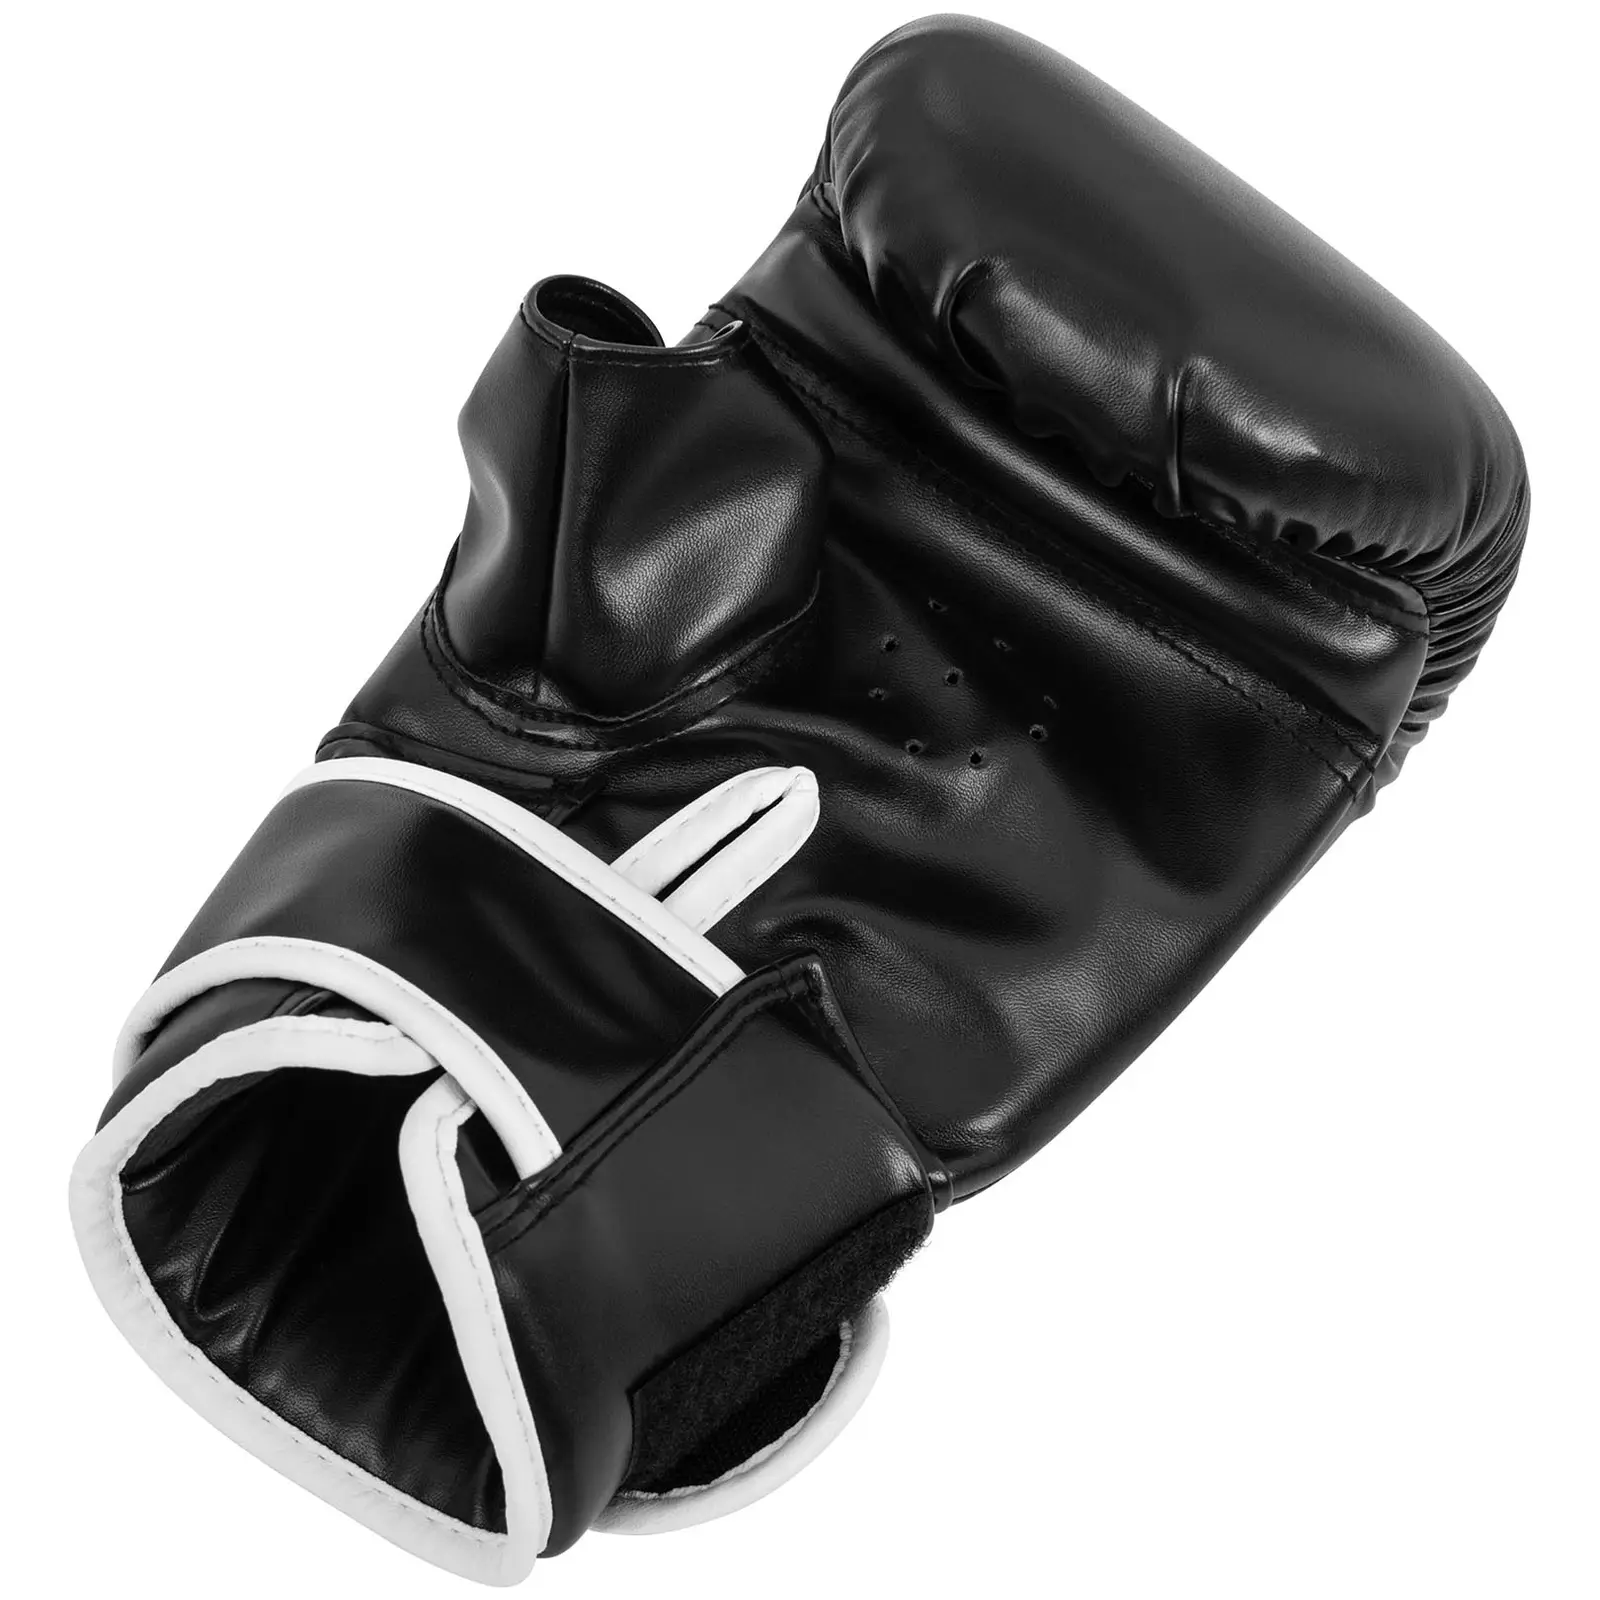 Luvas de boxe para treino em saco - 12 oz - preto